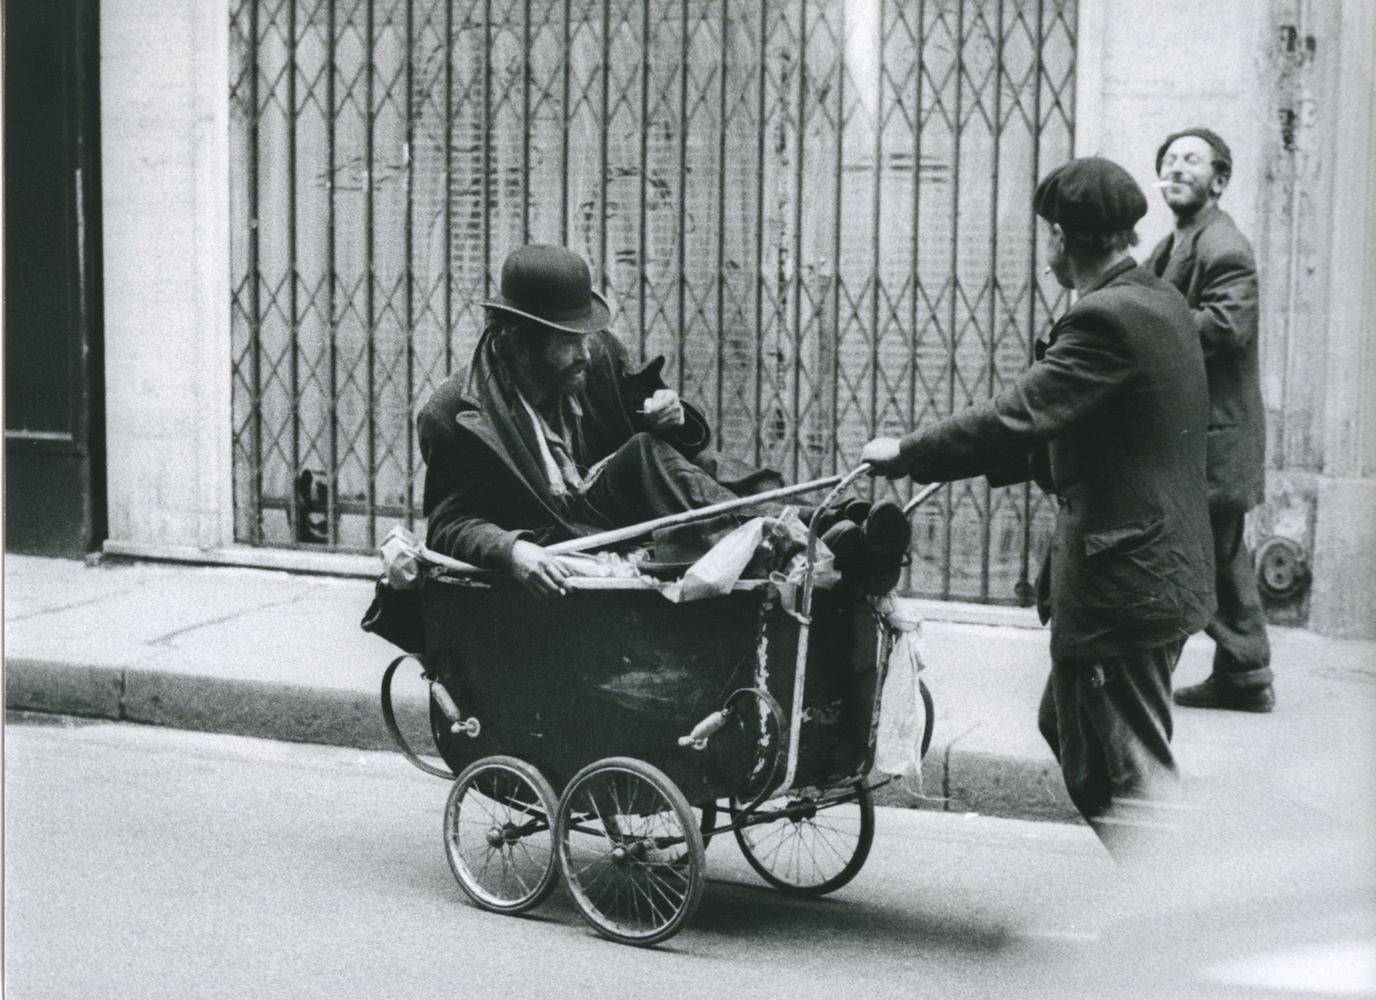 Paris, 1955